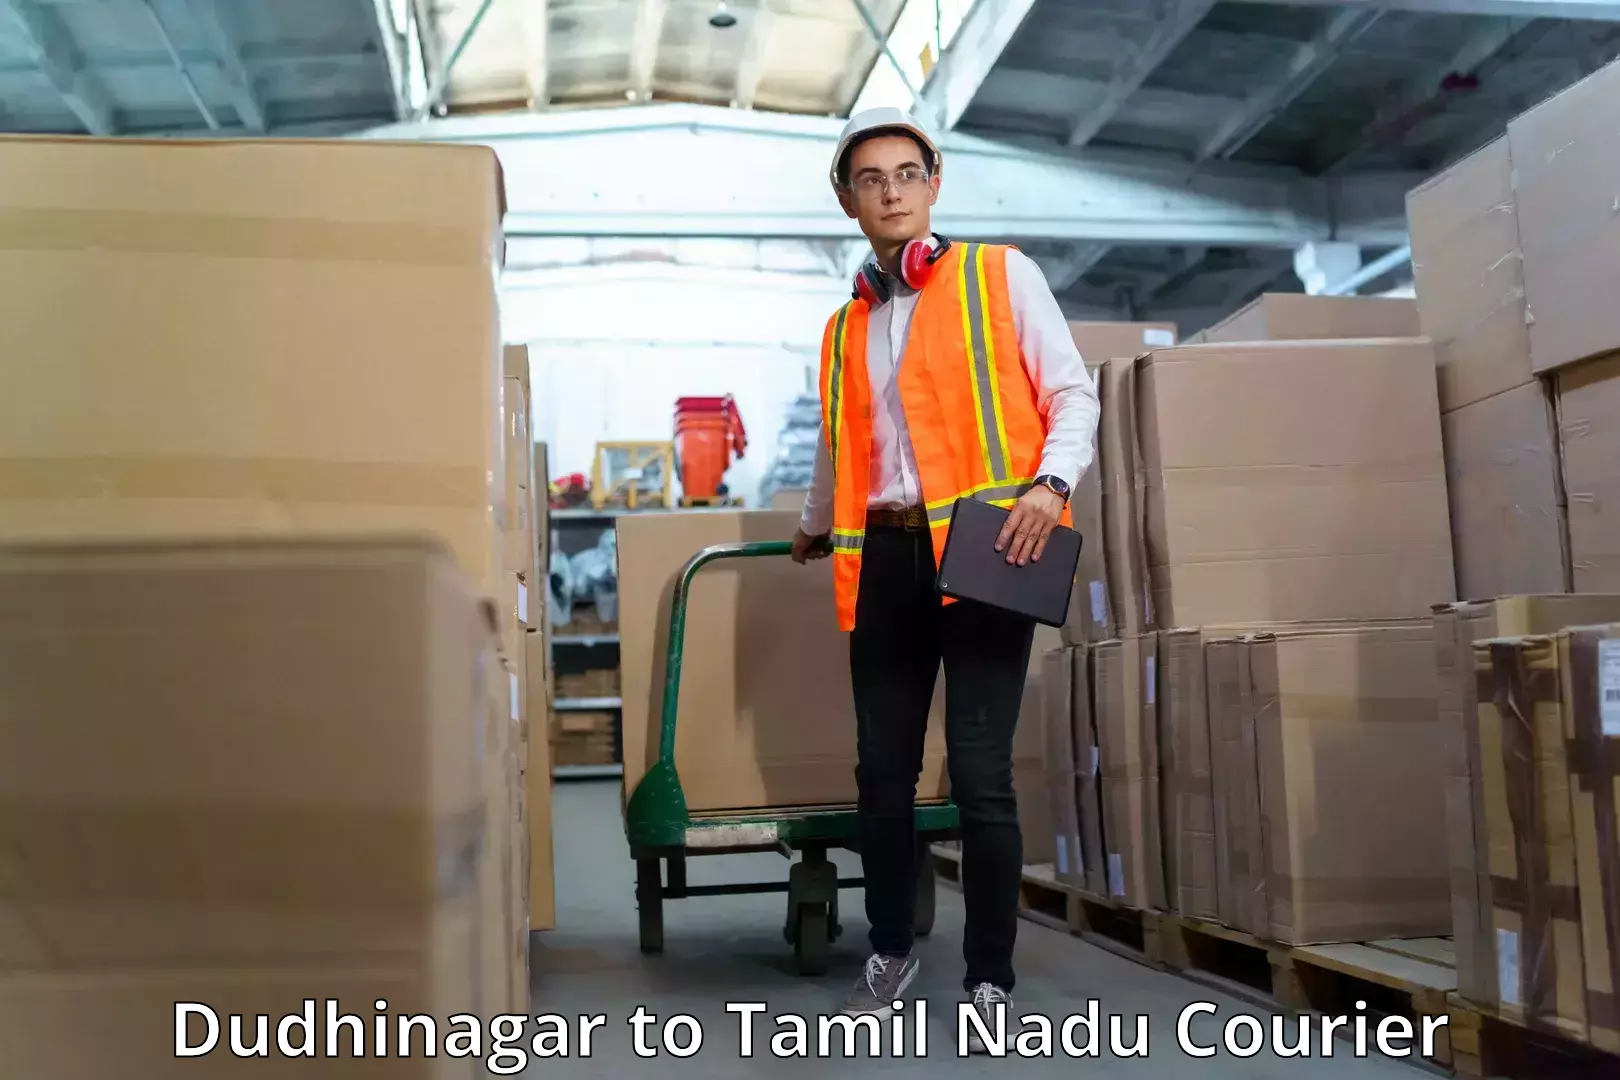 Courier service innovation Dudhinagar to Thiruvadanai